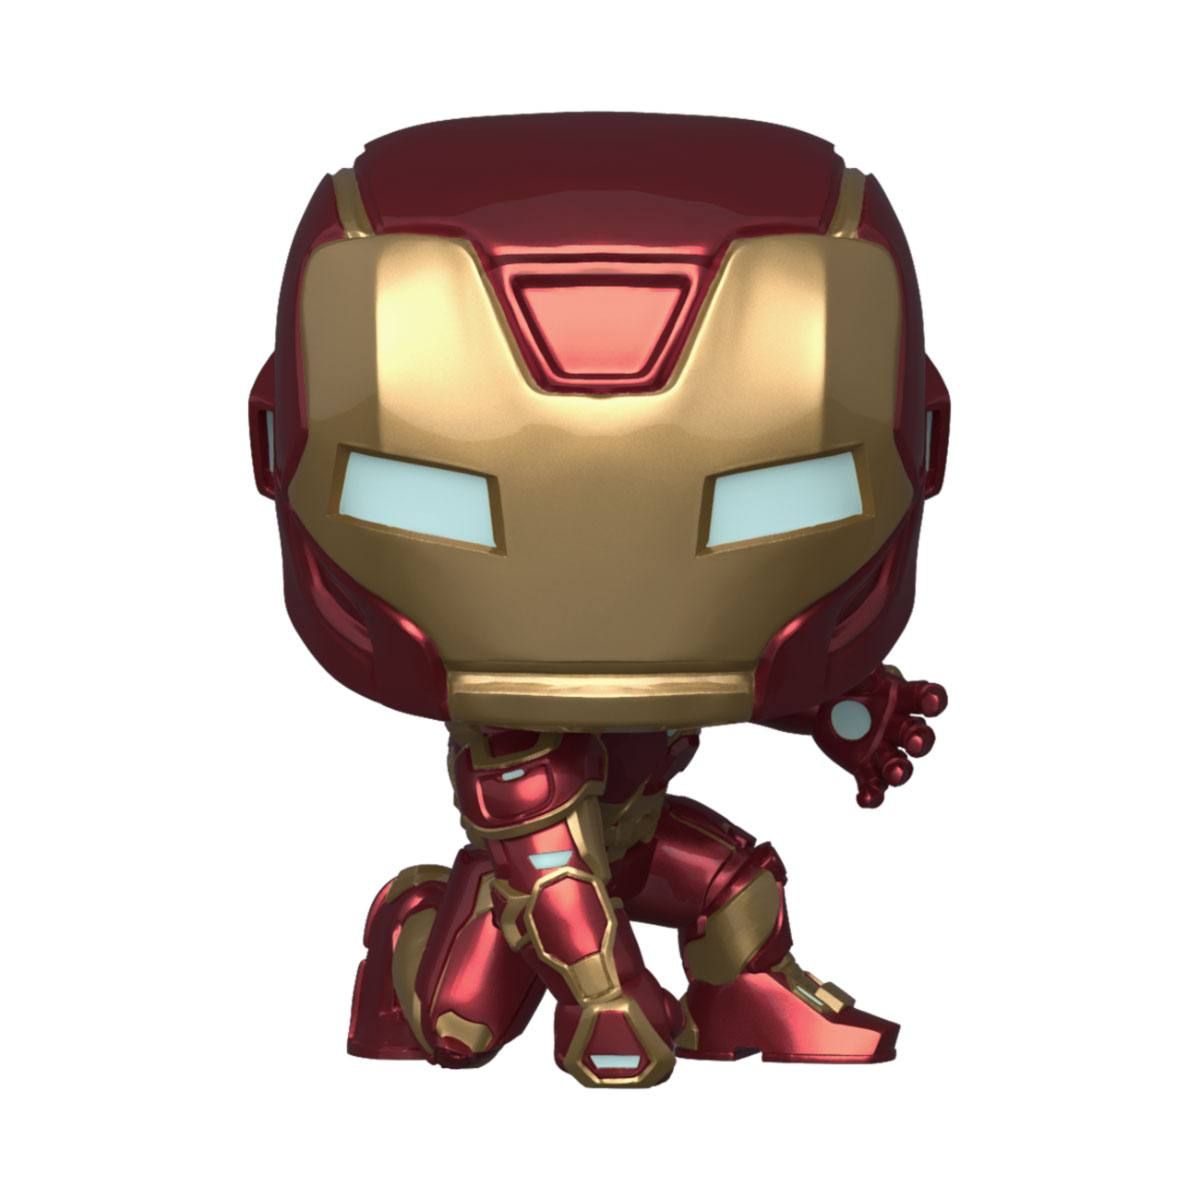 Marvel's Avengers (2020 video game) POP! Marvel Vinyl Figure Iron Man 9 cm Funko